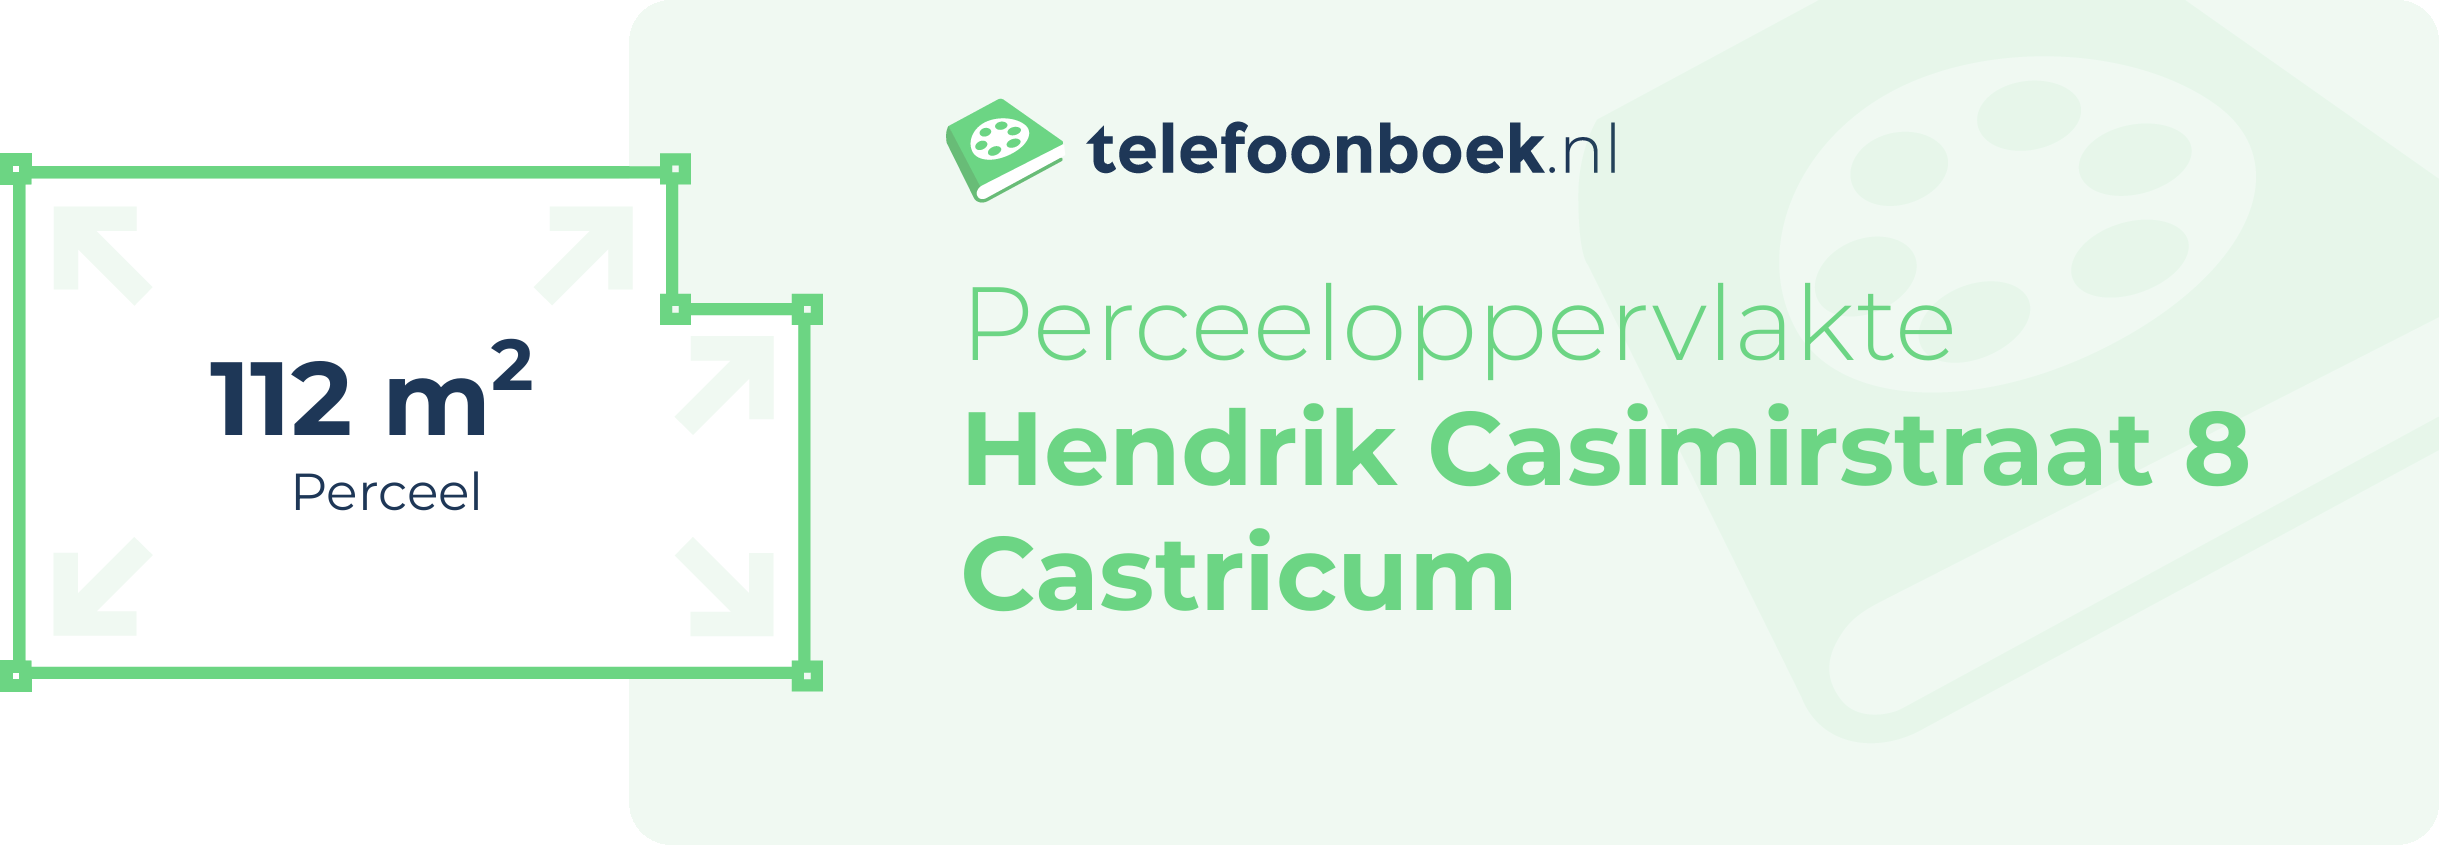 Perceeloppervlakte Hendrik Casimirstraat 8 Castricum